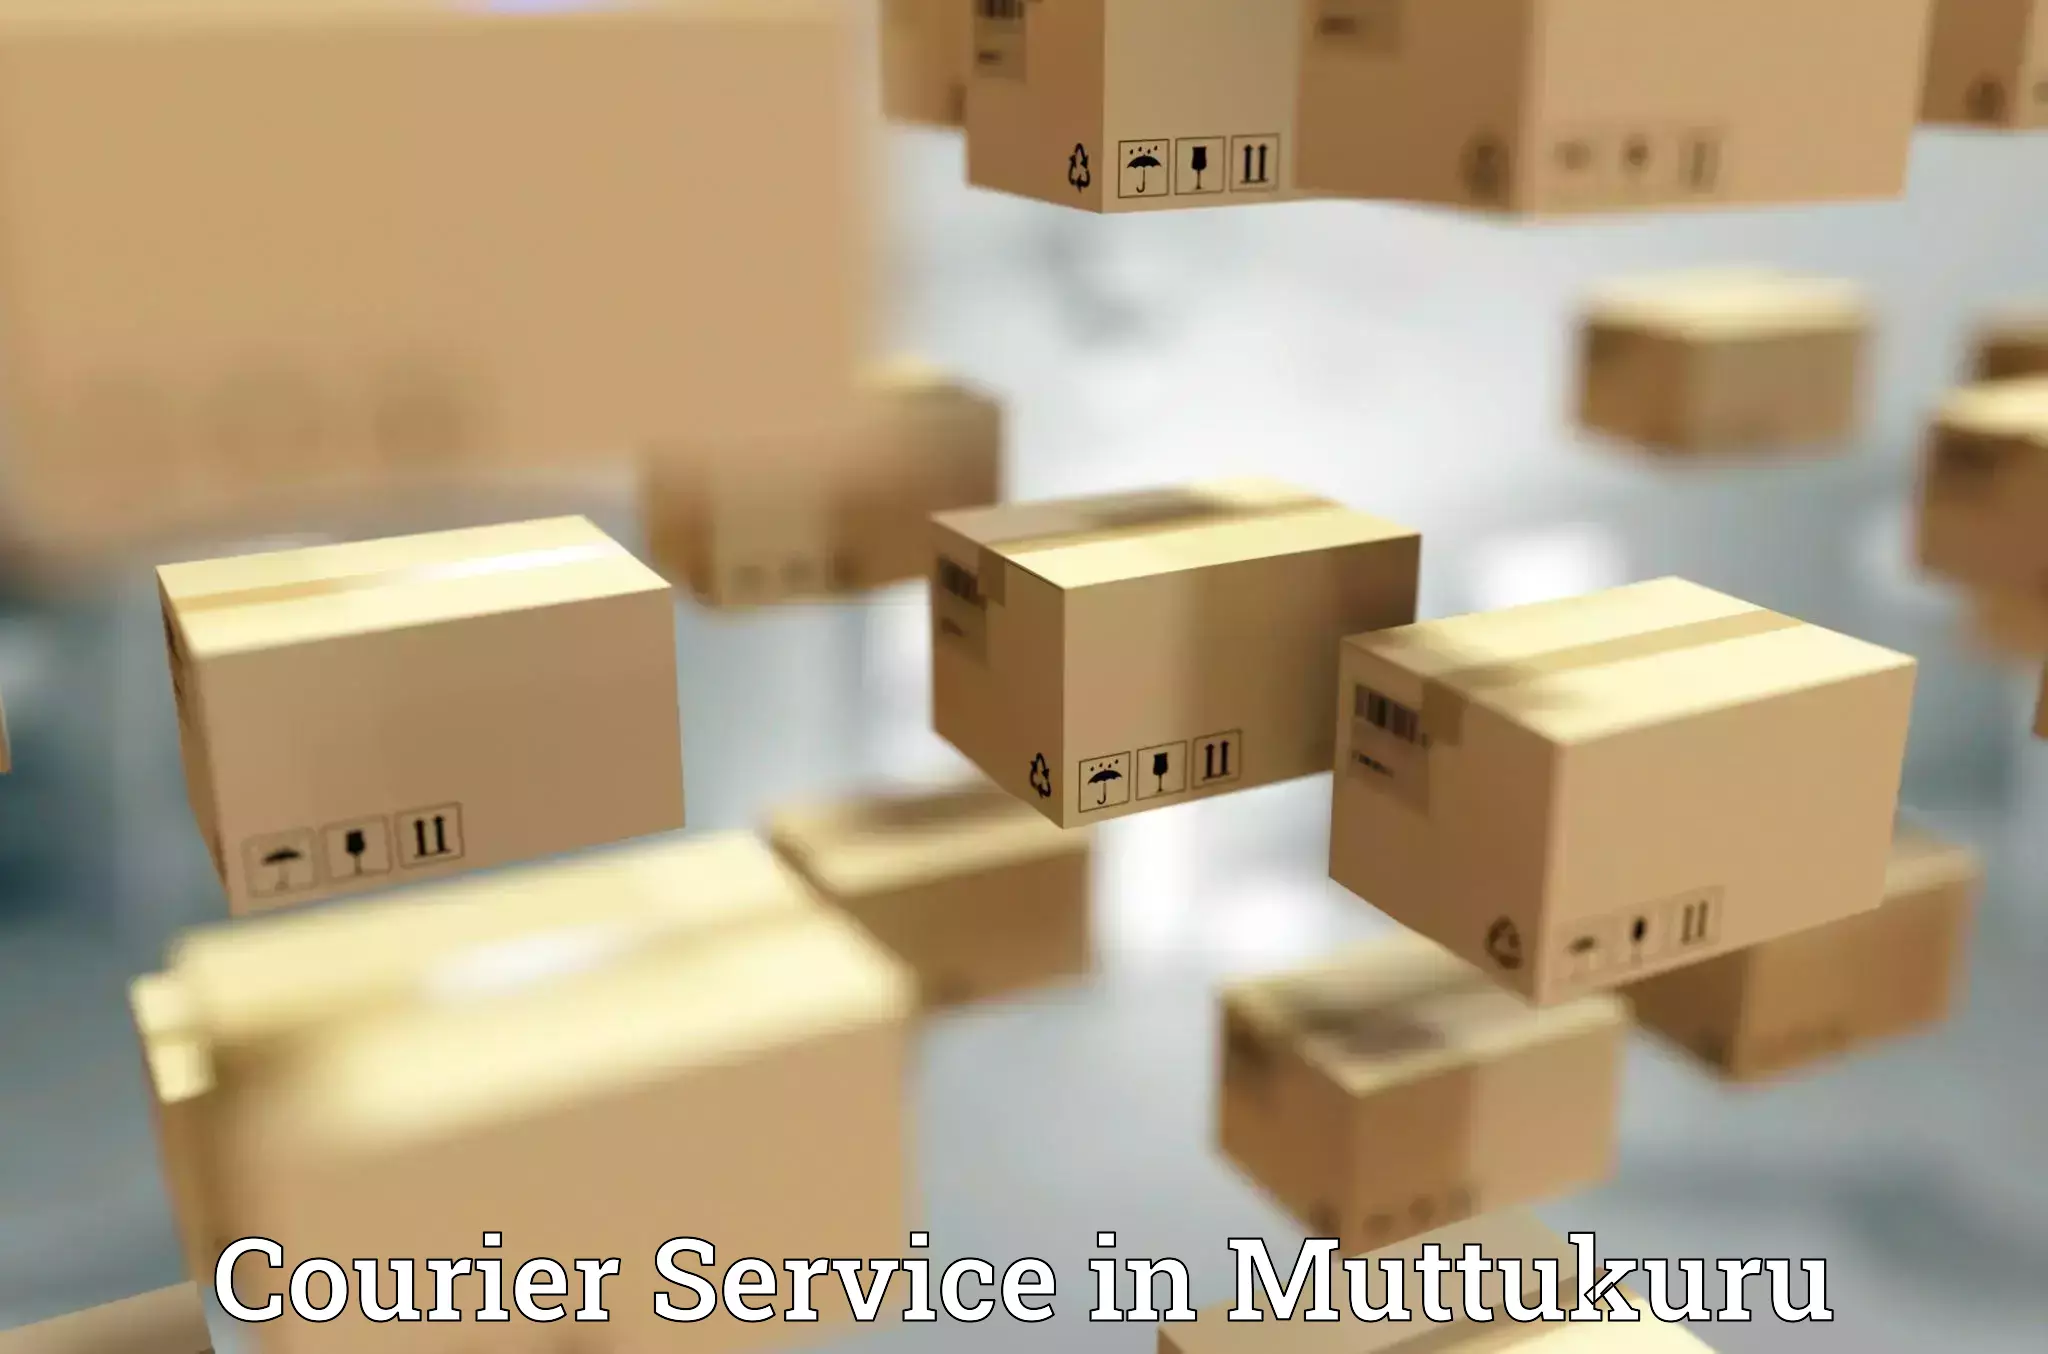 High-speed parcel service in Muttukuru